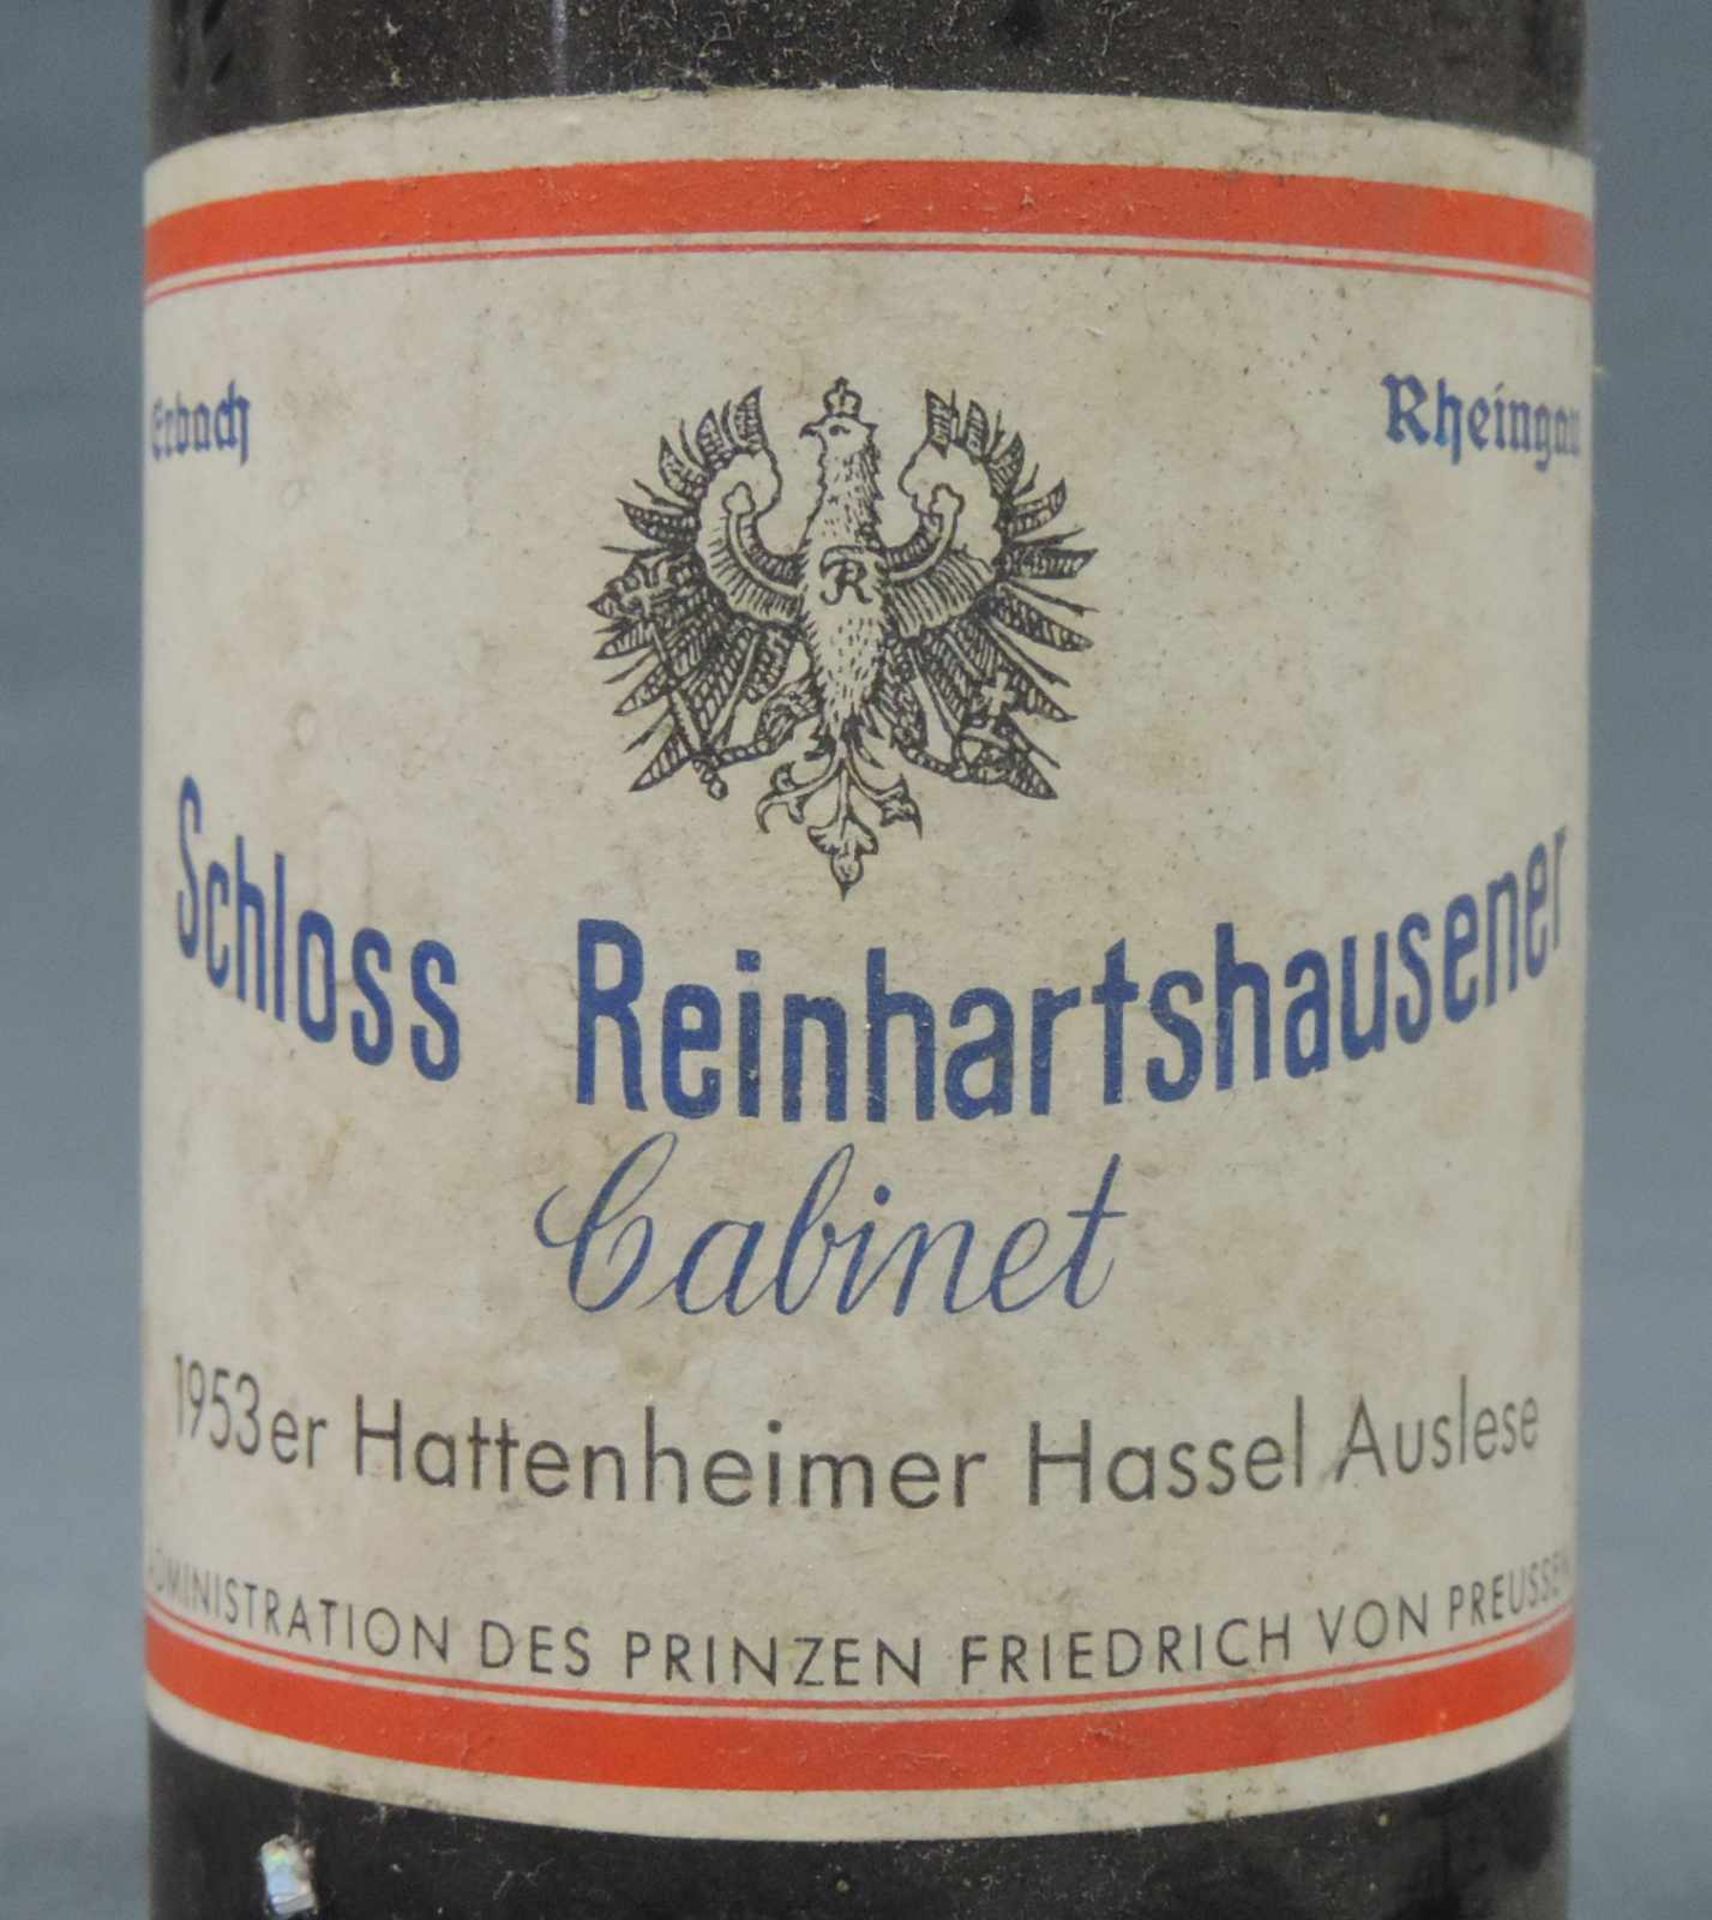 1953 Hattenheimer Hassel Auslese. Schloss Reinhartshausen Cabinet. Eine ganze Flasche 0,7 Liter. - Image 3 of 7